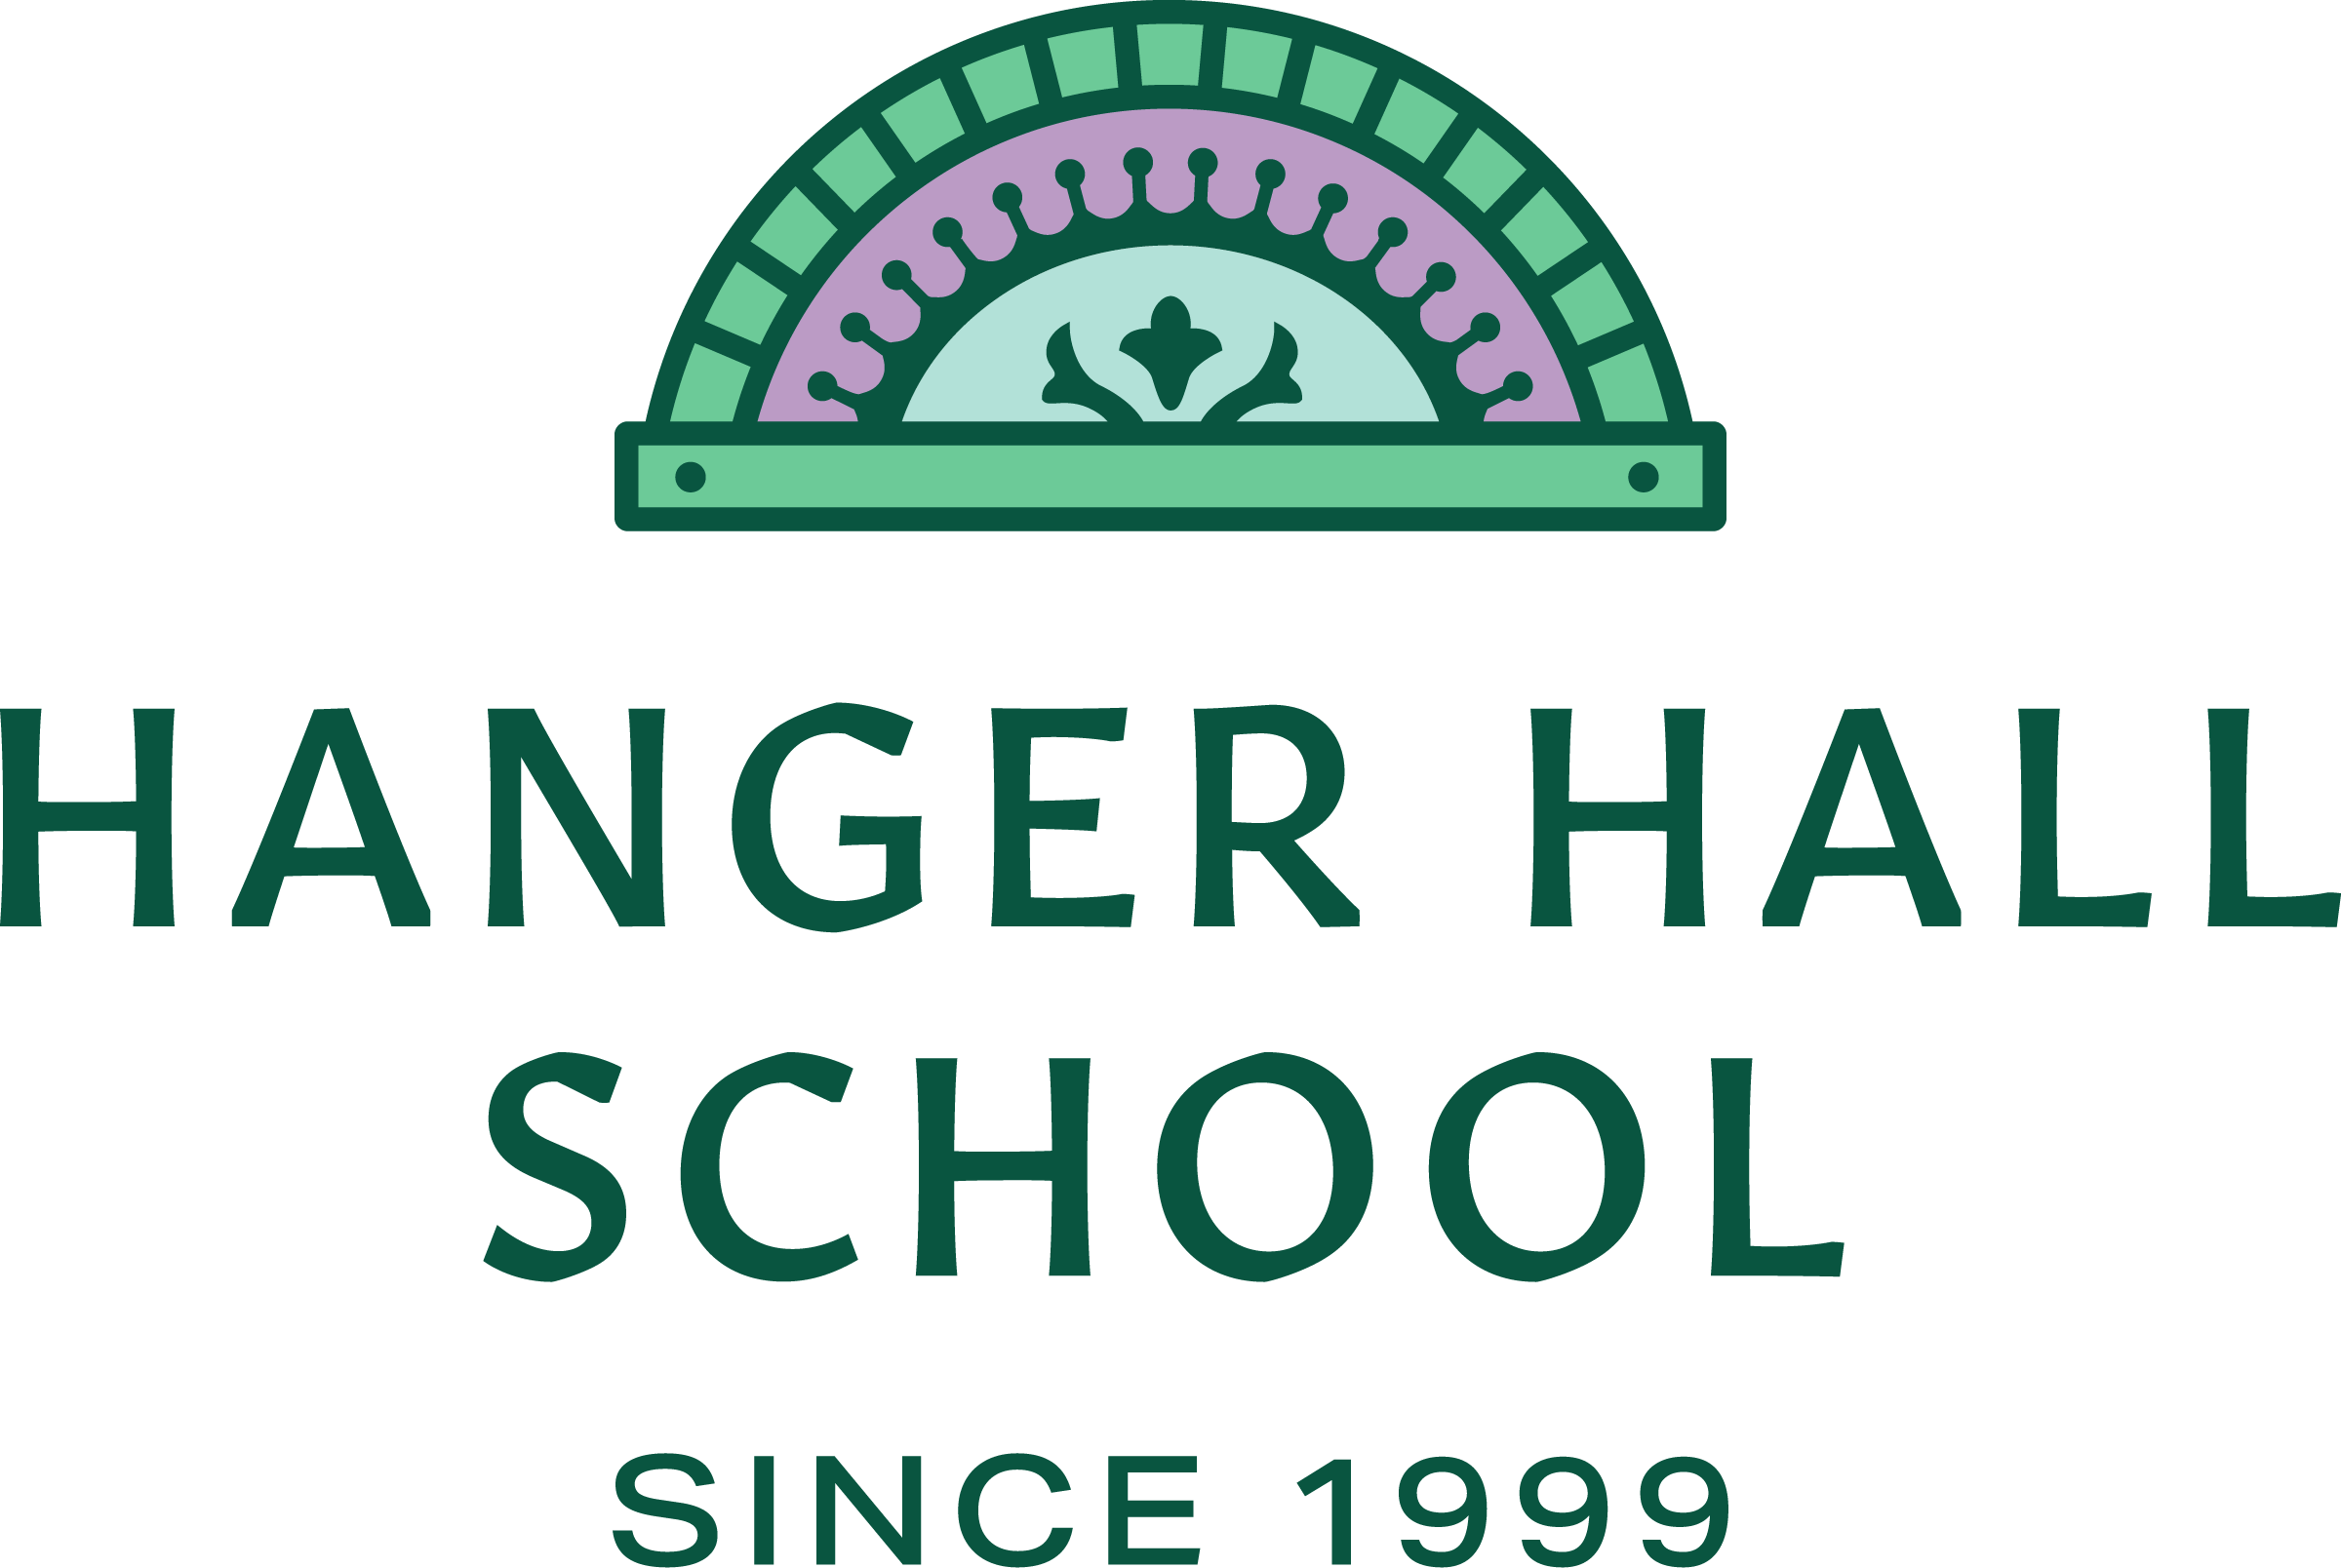 Hanger Hall School